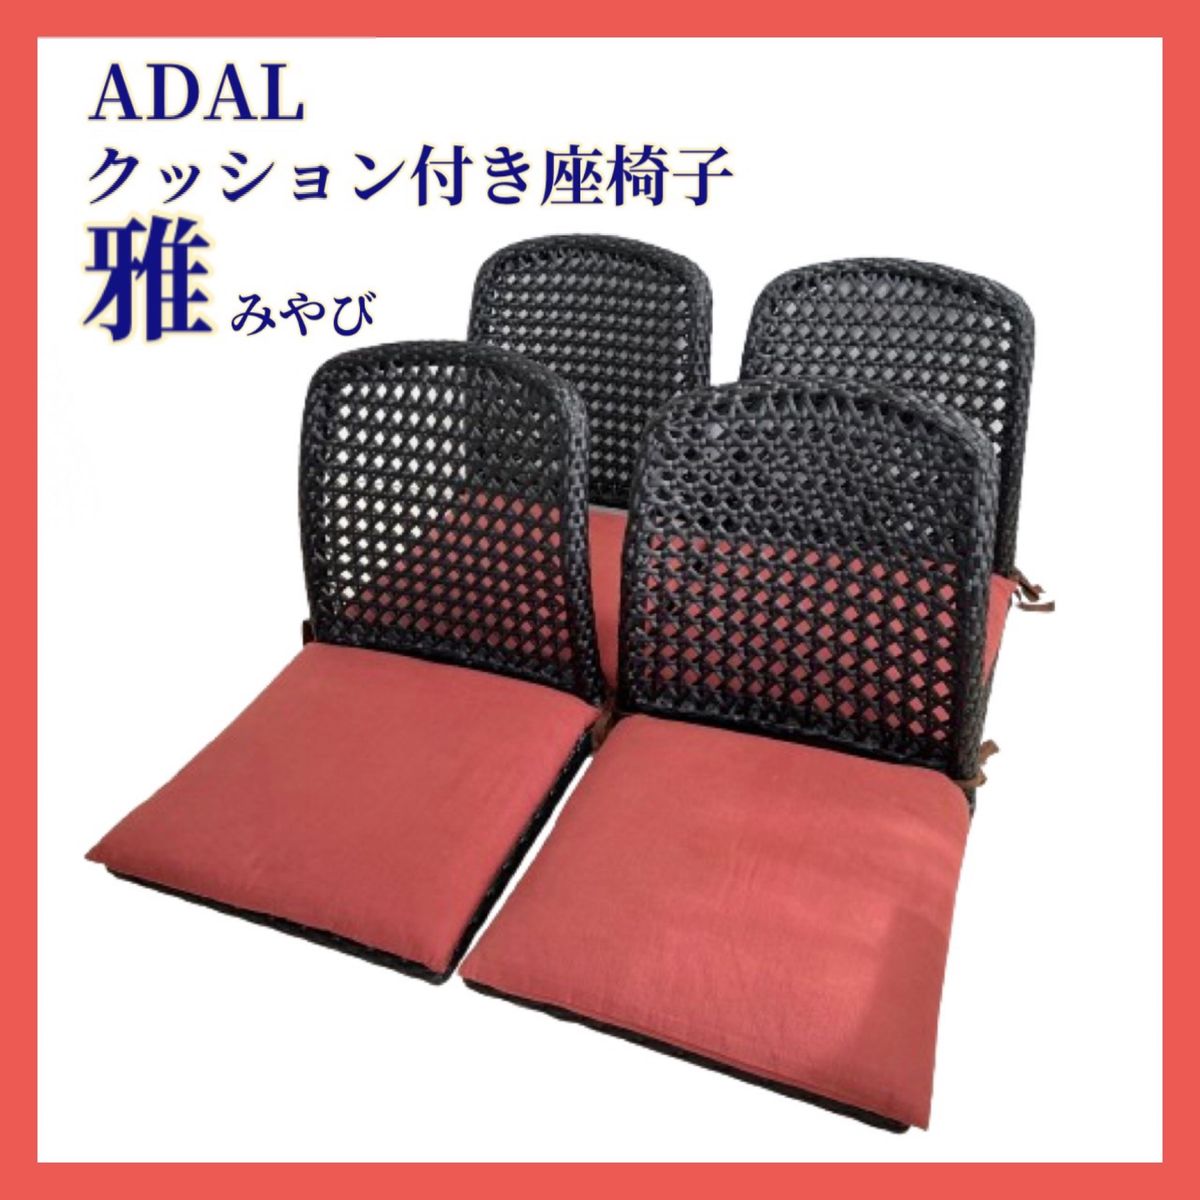 ADAL 雅 クッション付座椅子 4脚 アダル みやび 和風 高級座椅子